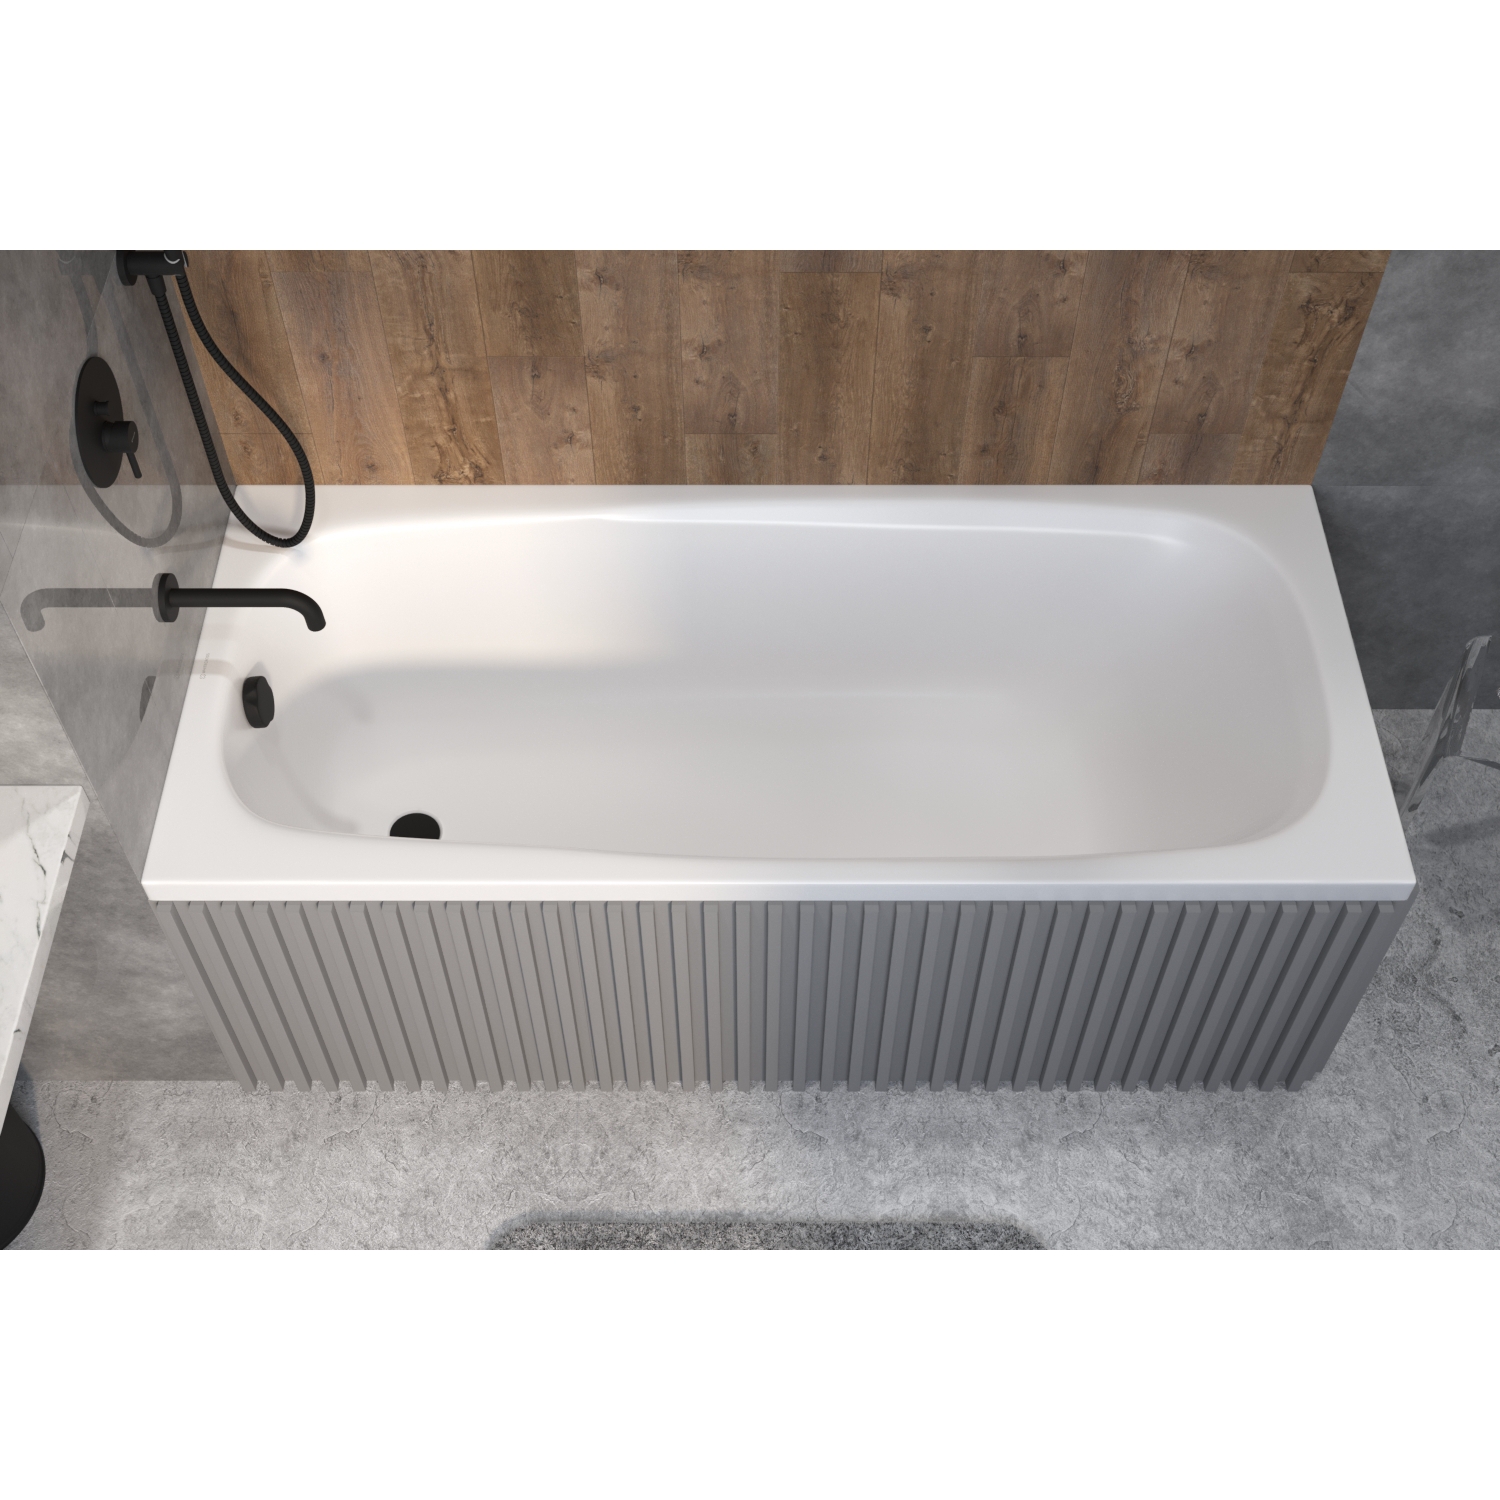 Акриловая ванна Excellent Layla 180x80, размер 180x80, цвет белый 0102.180080.100 - фото 3